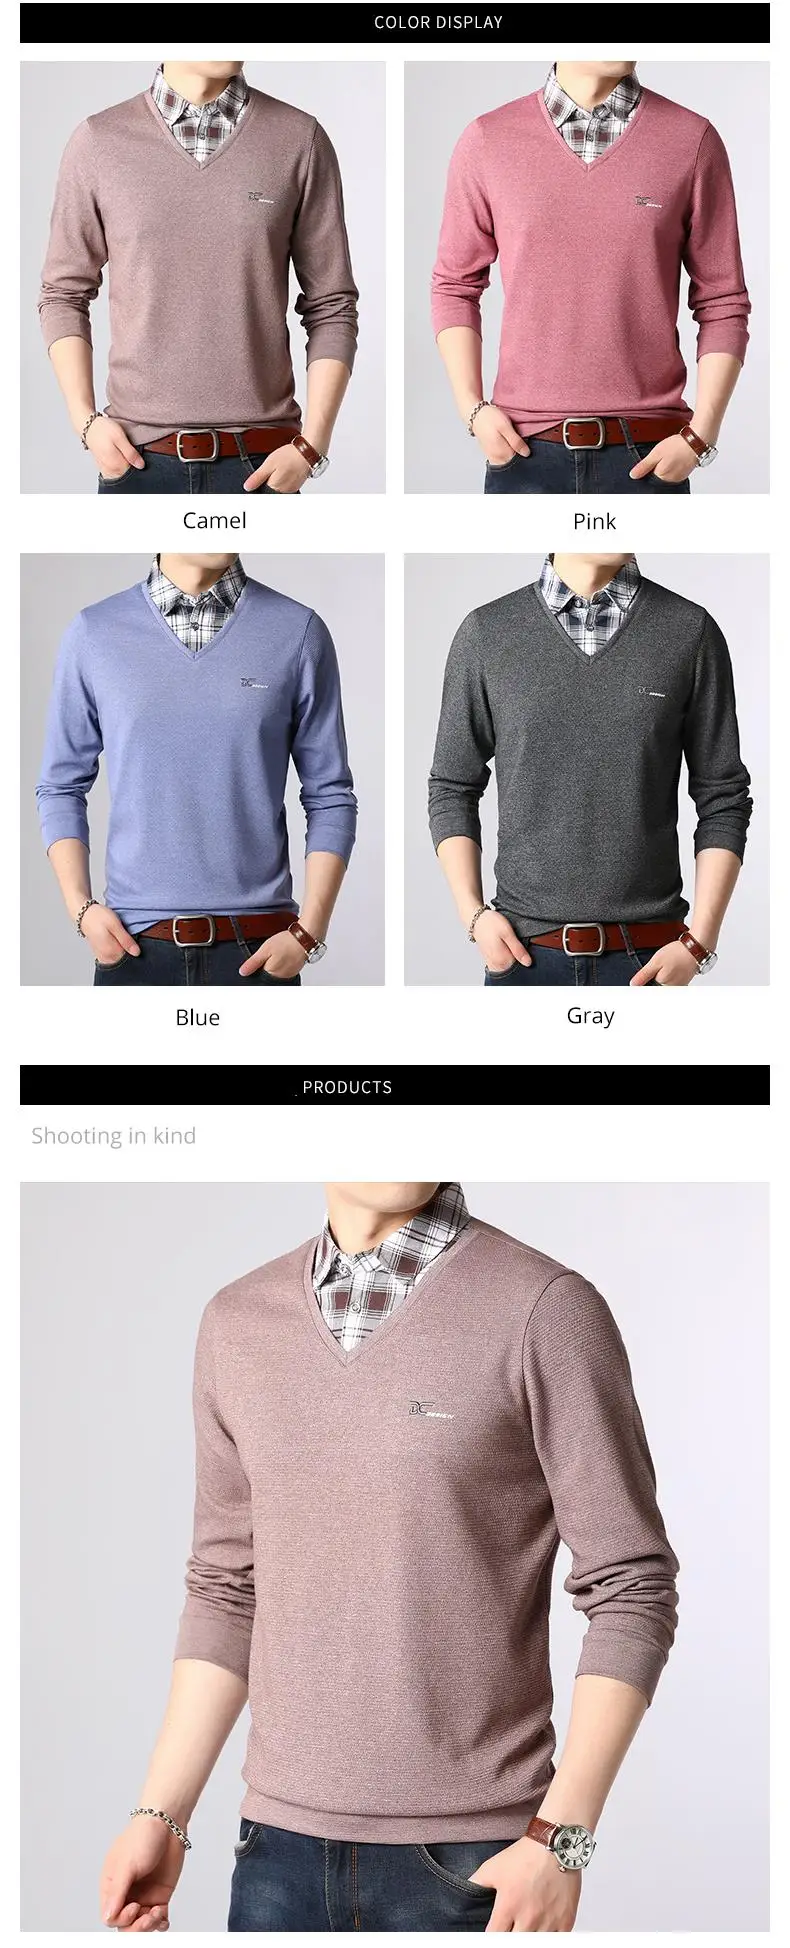 2019 новый модный брендовый свитер мужской пуловер рубашка воротник Slim Fit вязаные джемперы с v-образным вырезом зимний Корейский стиль